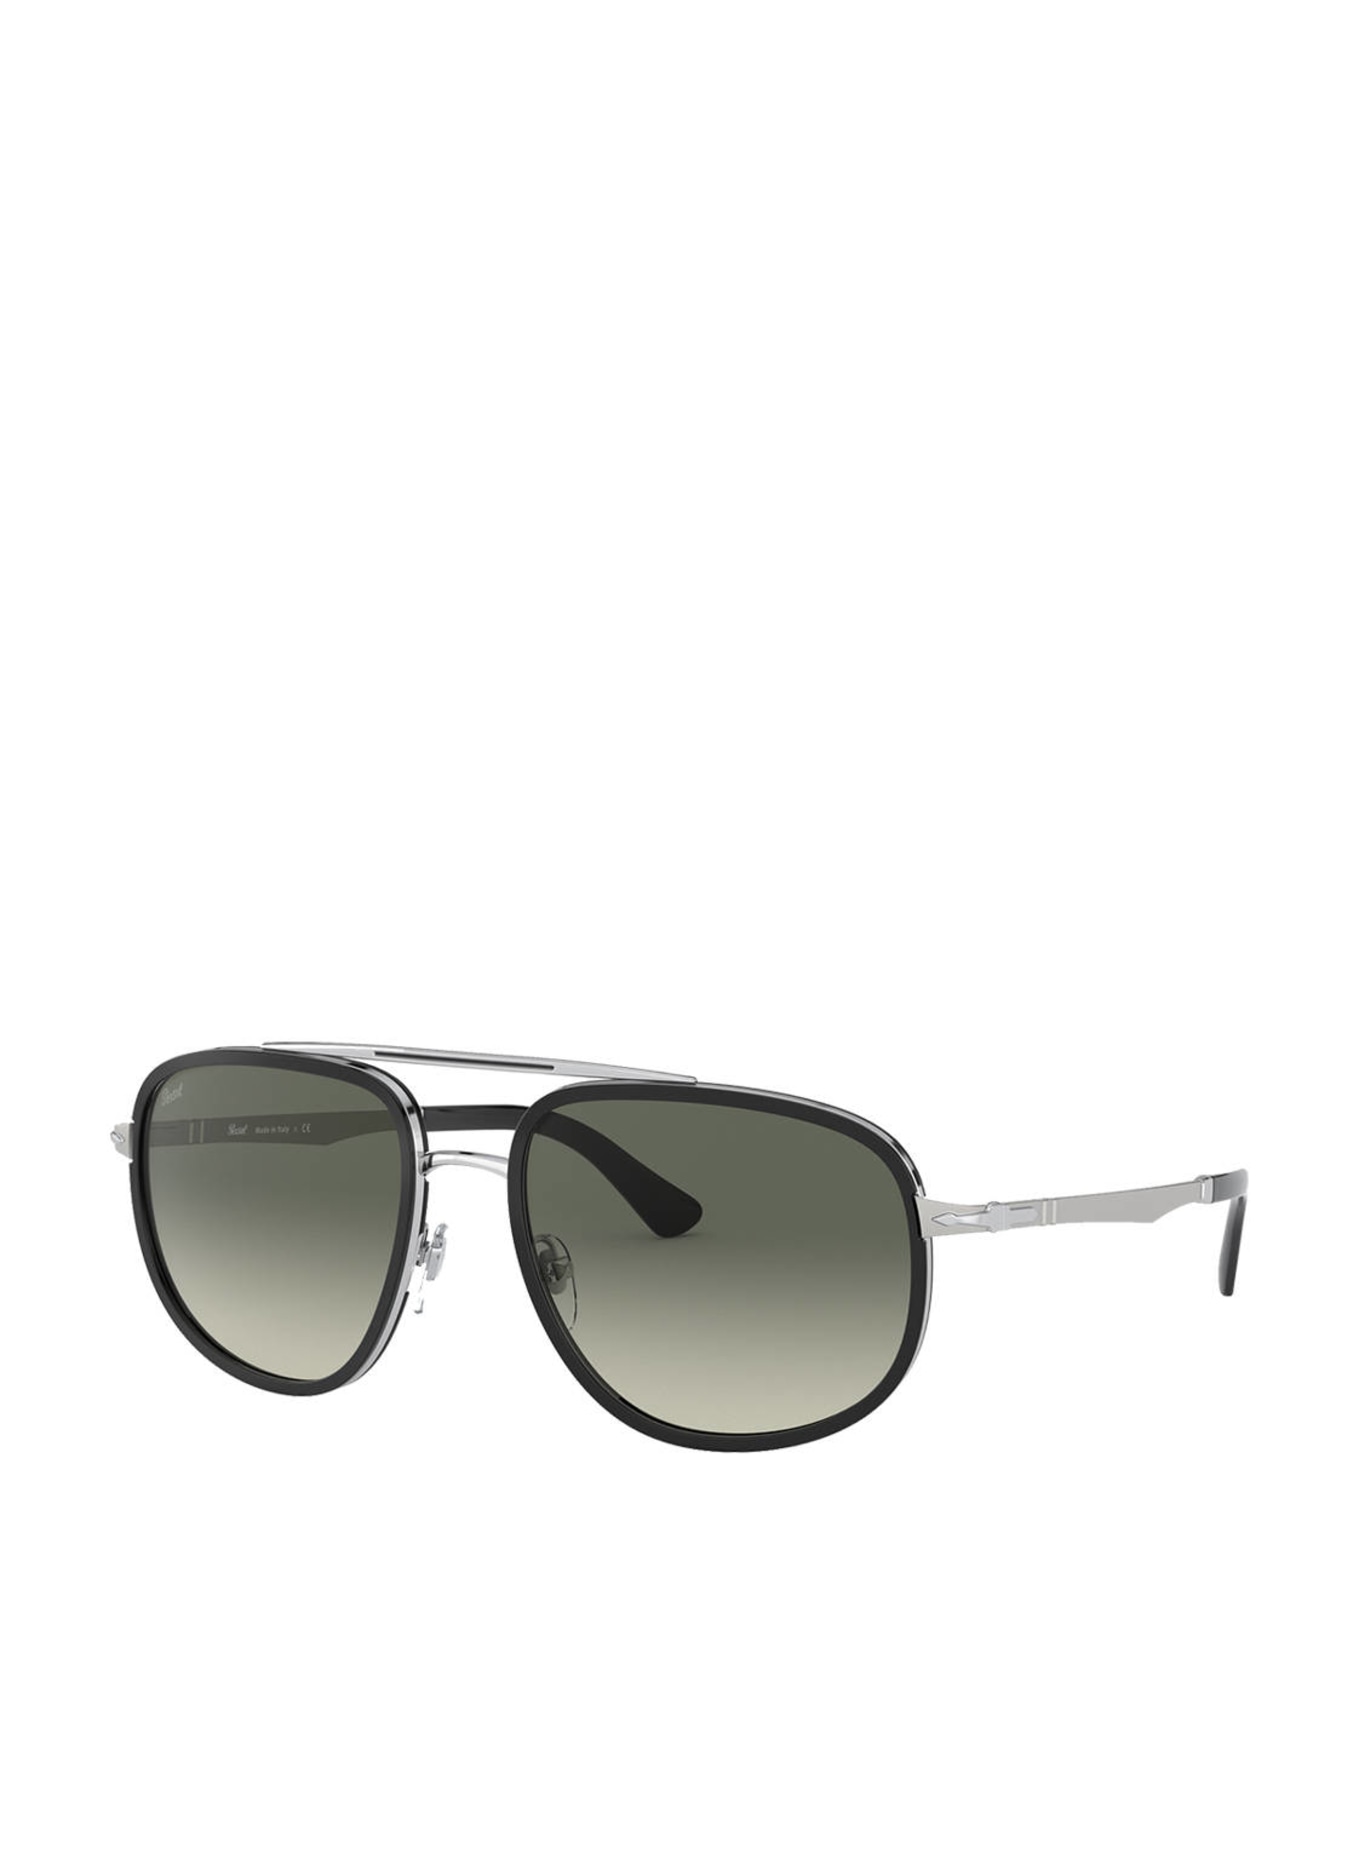 Persol Sunglasses PO2465S, Color: 518/71 - BLACK/ GRAY GRADIENT (Image 1)